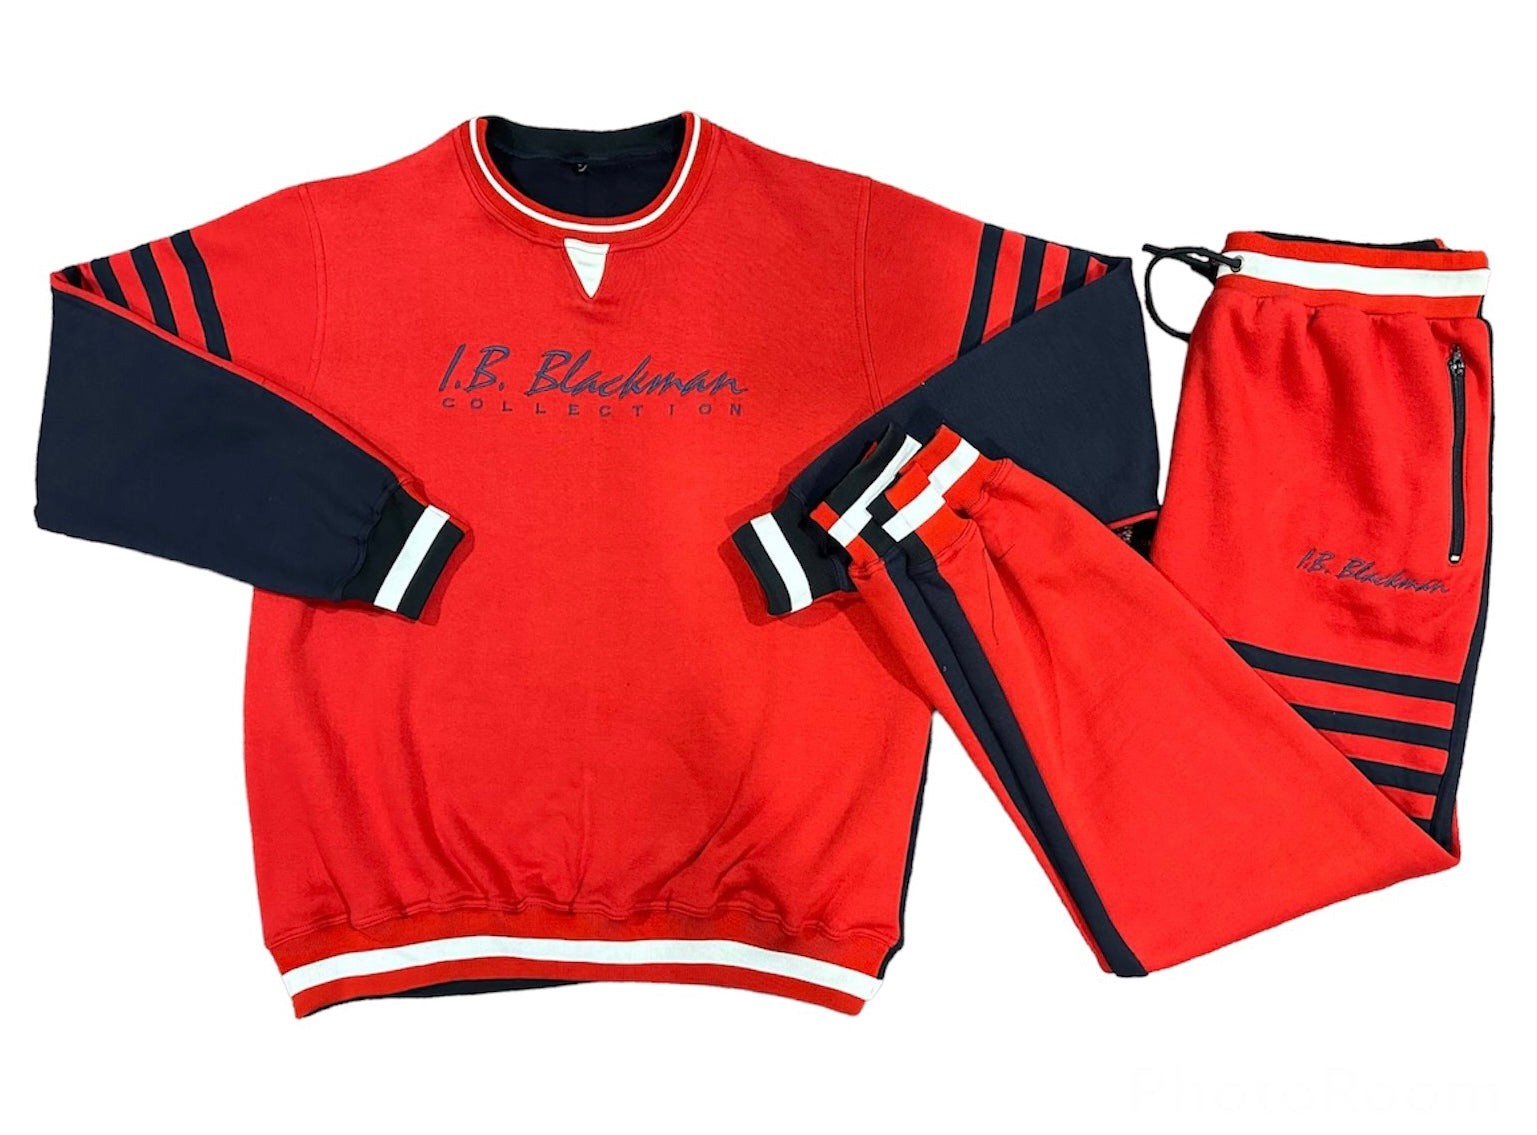 The IV Sweatshirt Blackman – I.B